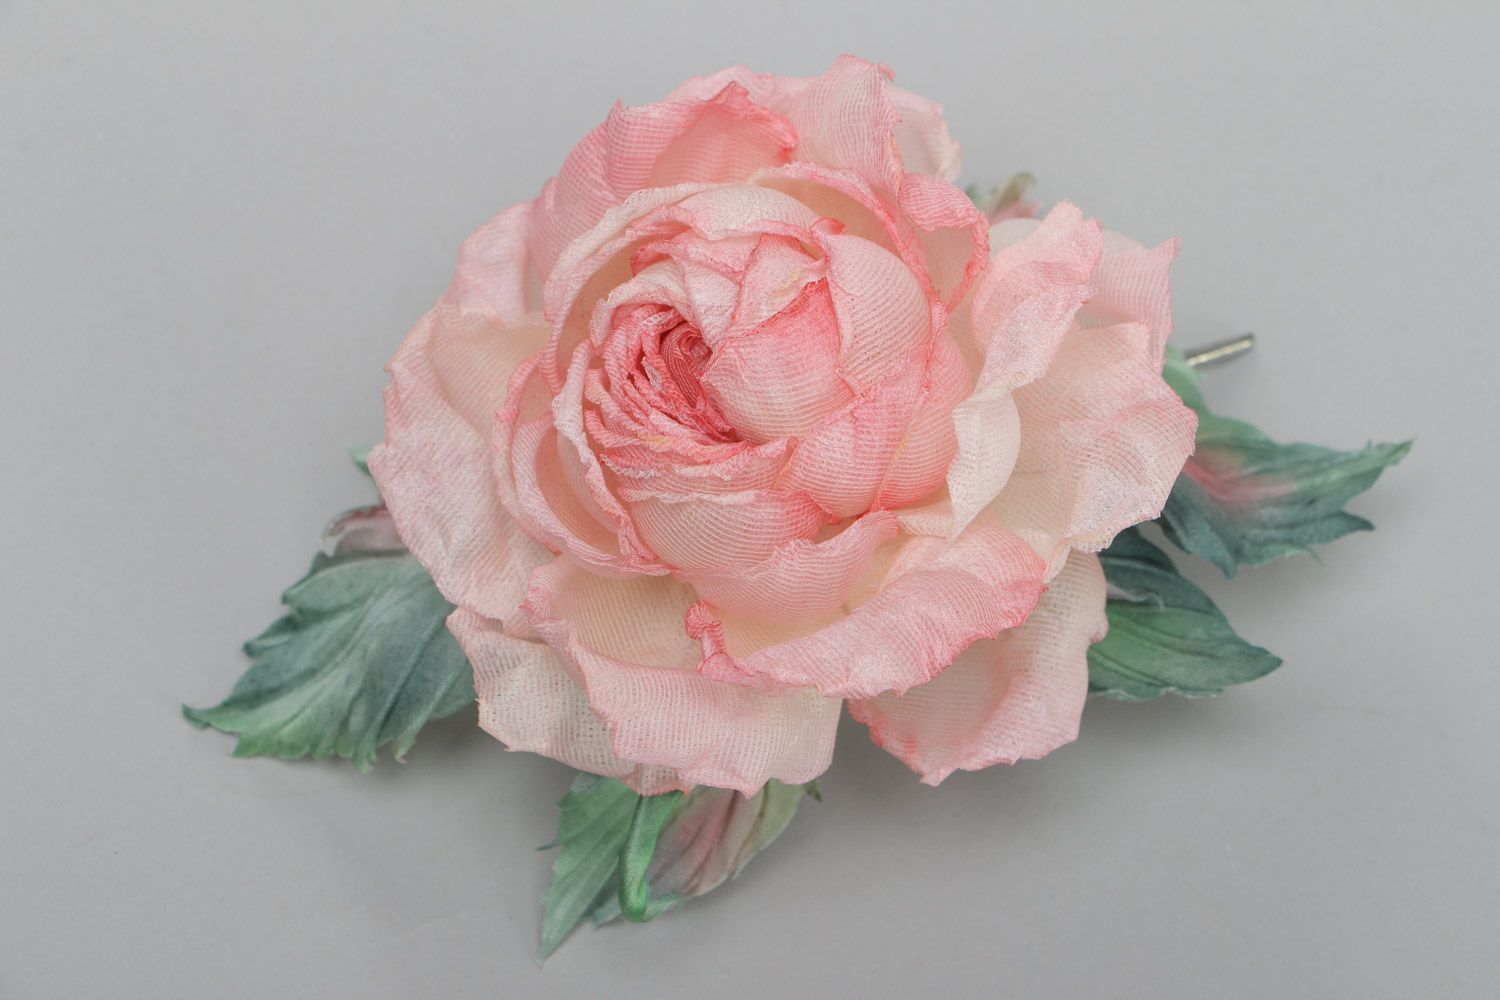 Брошь в виде розы крупная розовая романтичная изящная красивая ручной работы фото 2